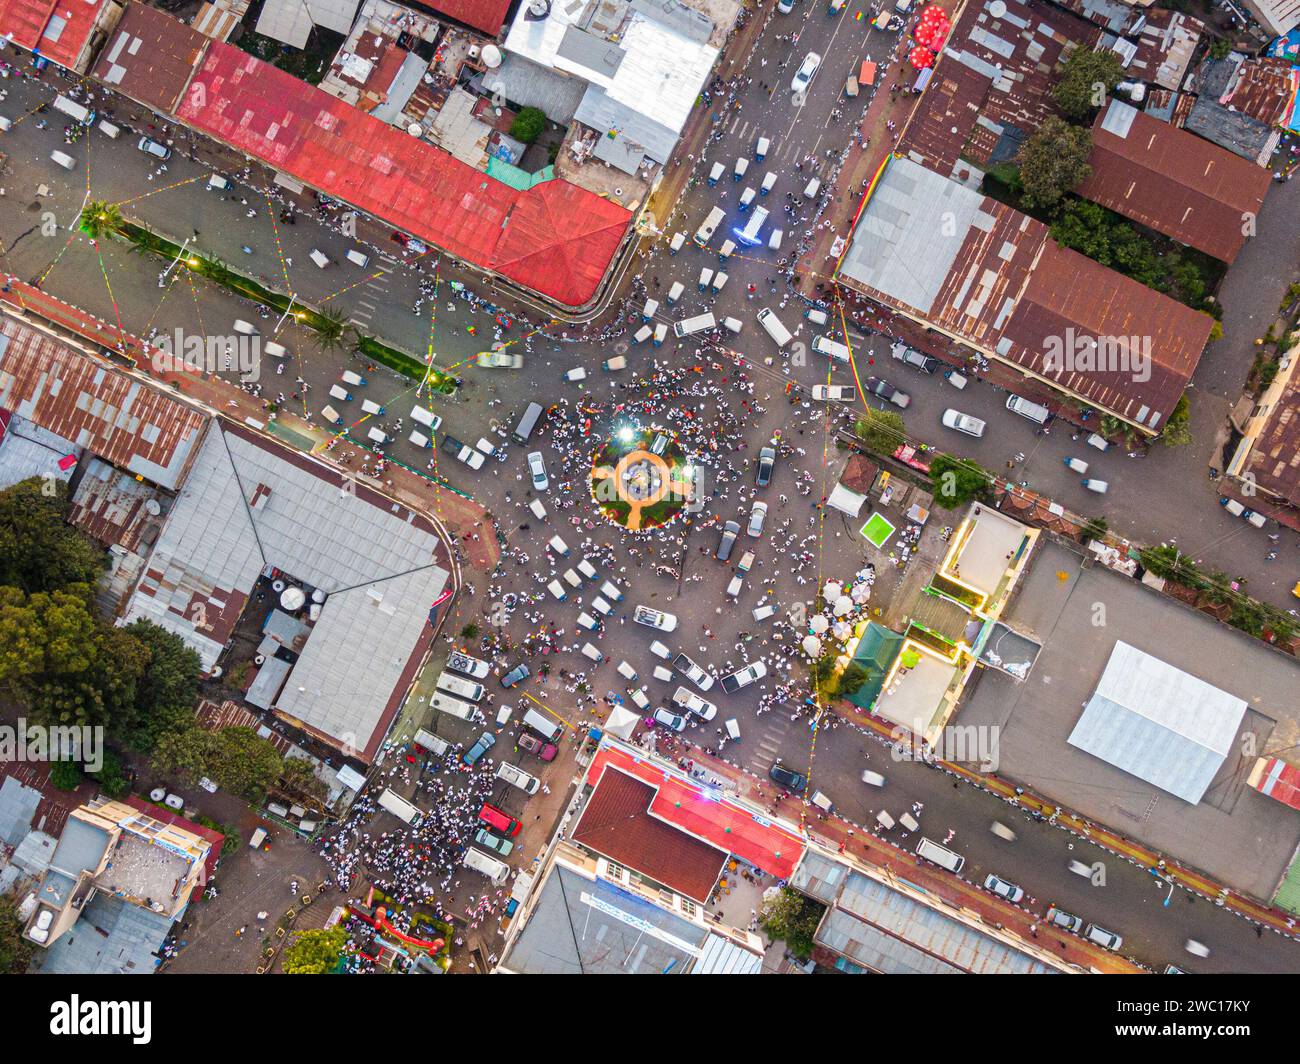 Vue aérienne du centre-ville de Gondar avec beaucoup de circulation automobile et piétonne, Ethiopie, Afrique Banque D'Images